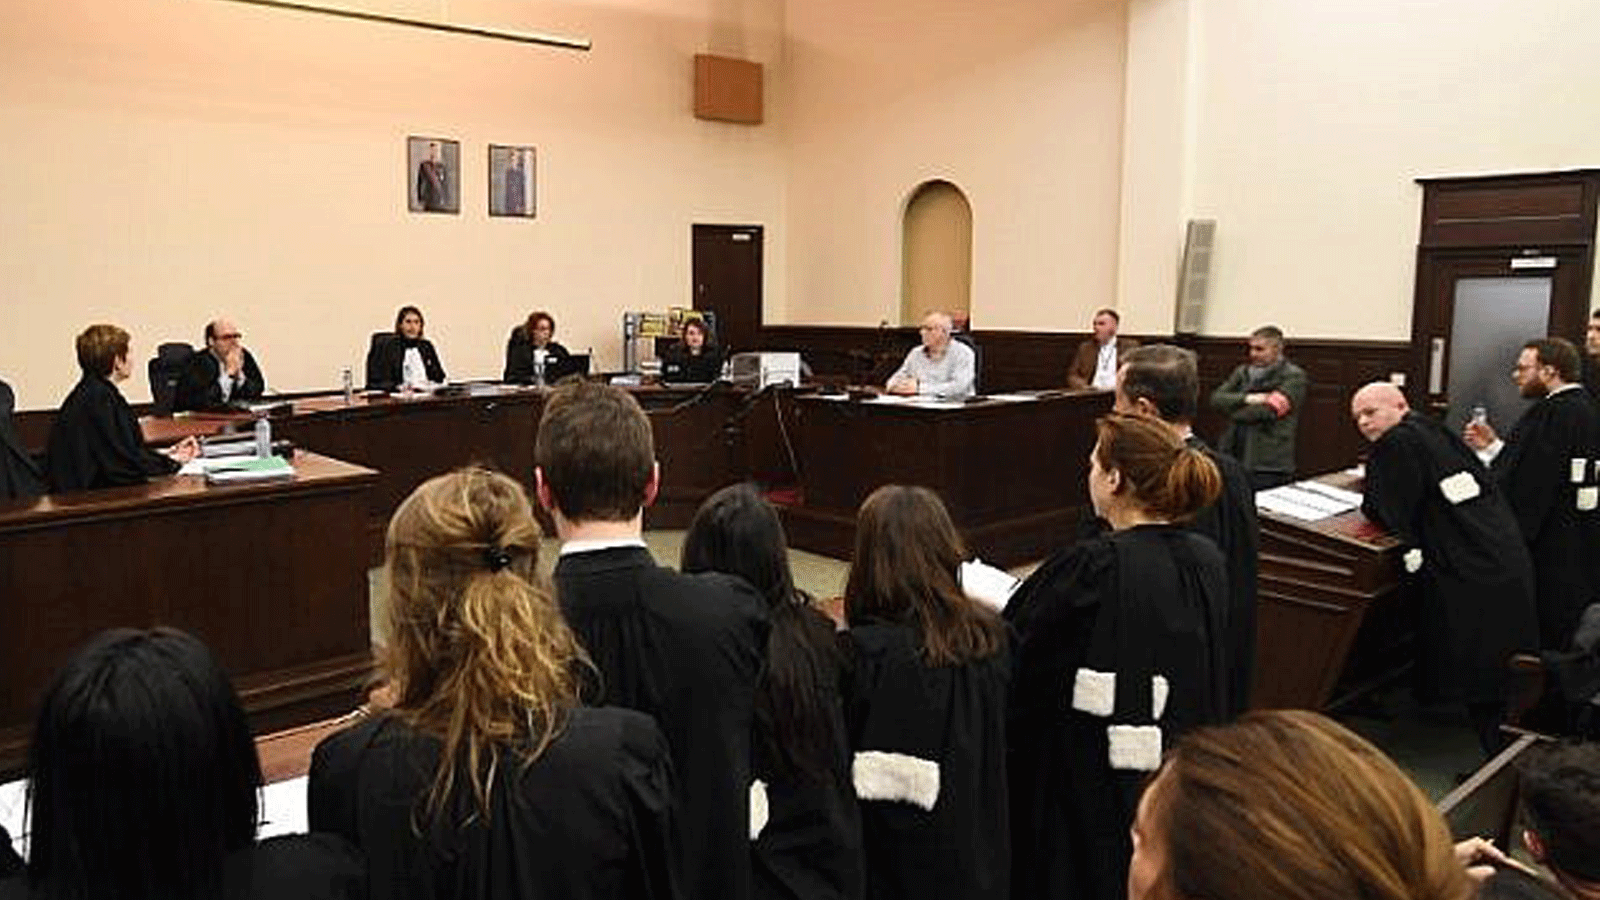 رئيسة المحكمة ماري فرانس كوتجن (وسط) تجلس مع أعضاء المحكمة أثناء افتتاح محاكمة المشتبه به الرئيسي في هجمات نوفمبر 2015 في باريس صلاح عبد السلام، في قصر العدل في بروكسل، 5 شباط/ فبراير 2018.